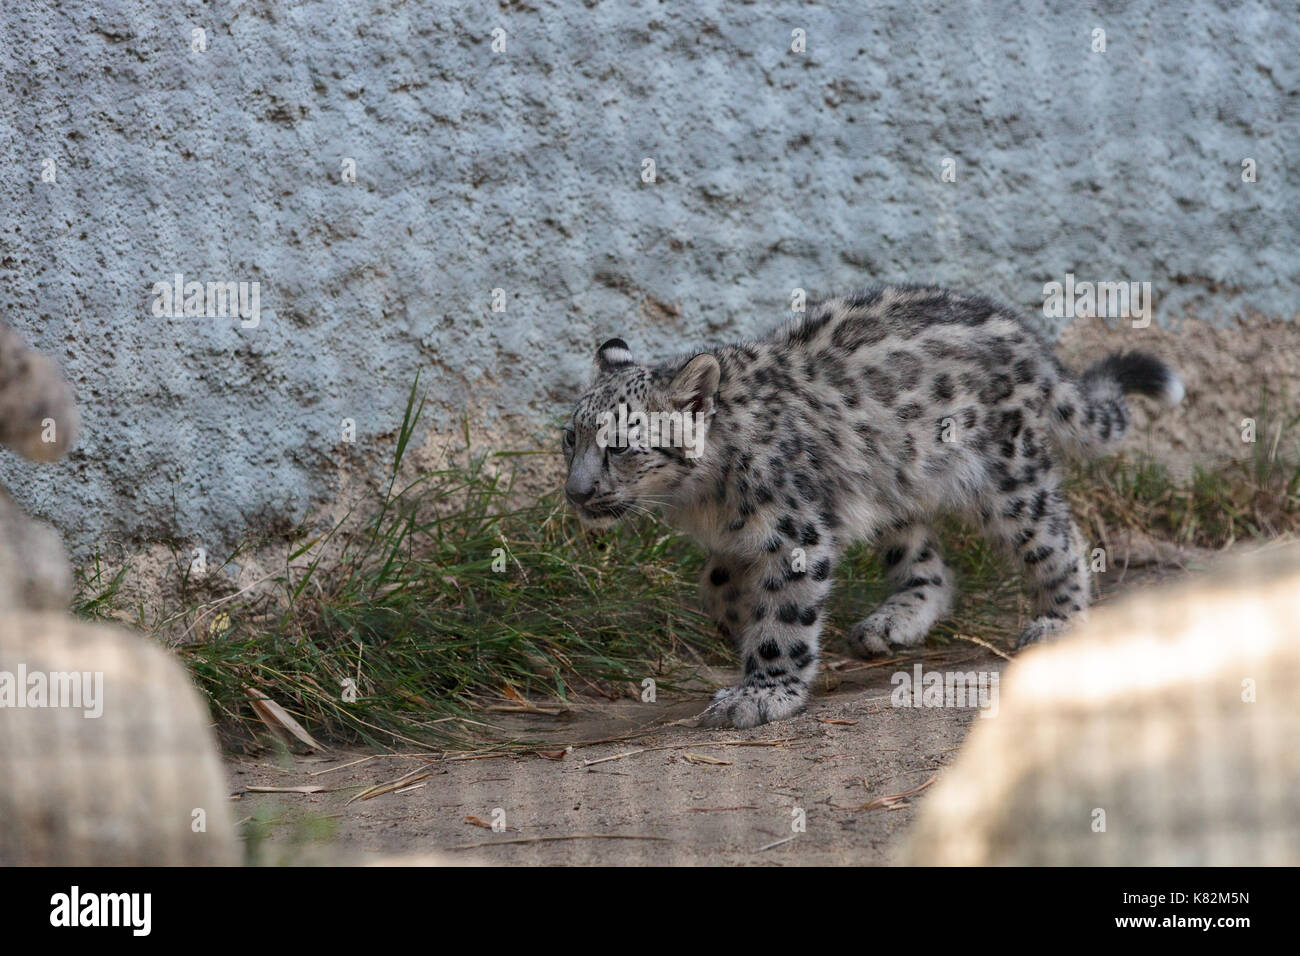 Snow Leopard Panthera uncia in die Bergkette von China, Nepal und Indien gefunden. Stockfoto